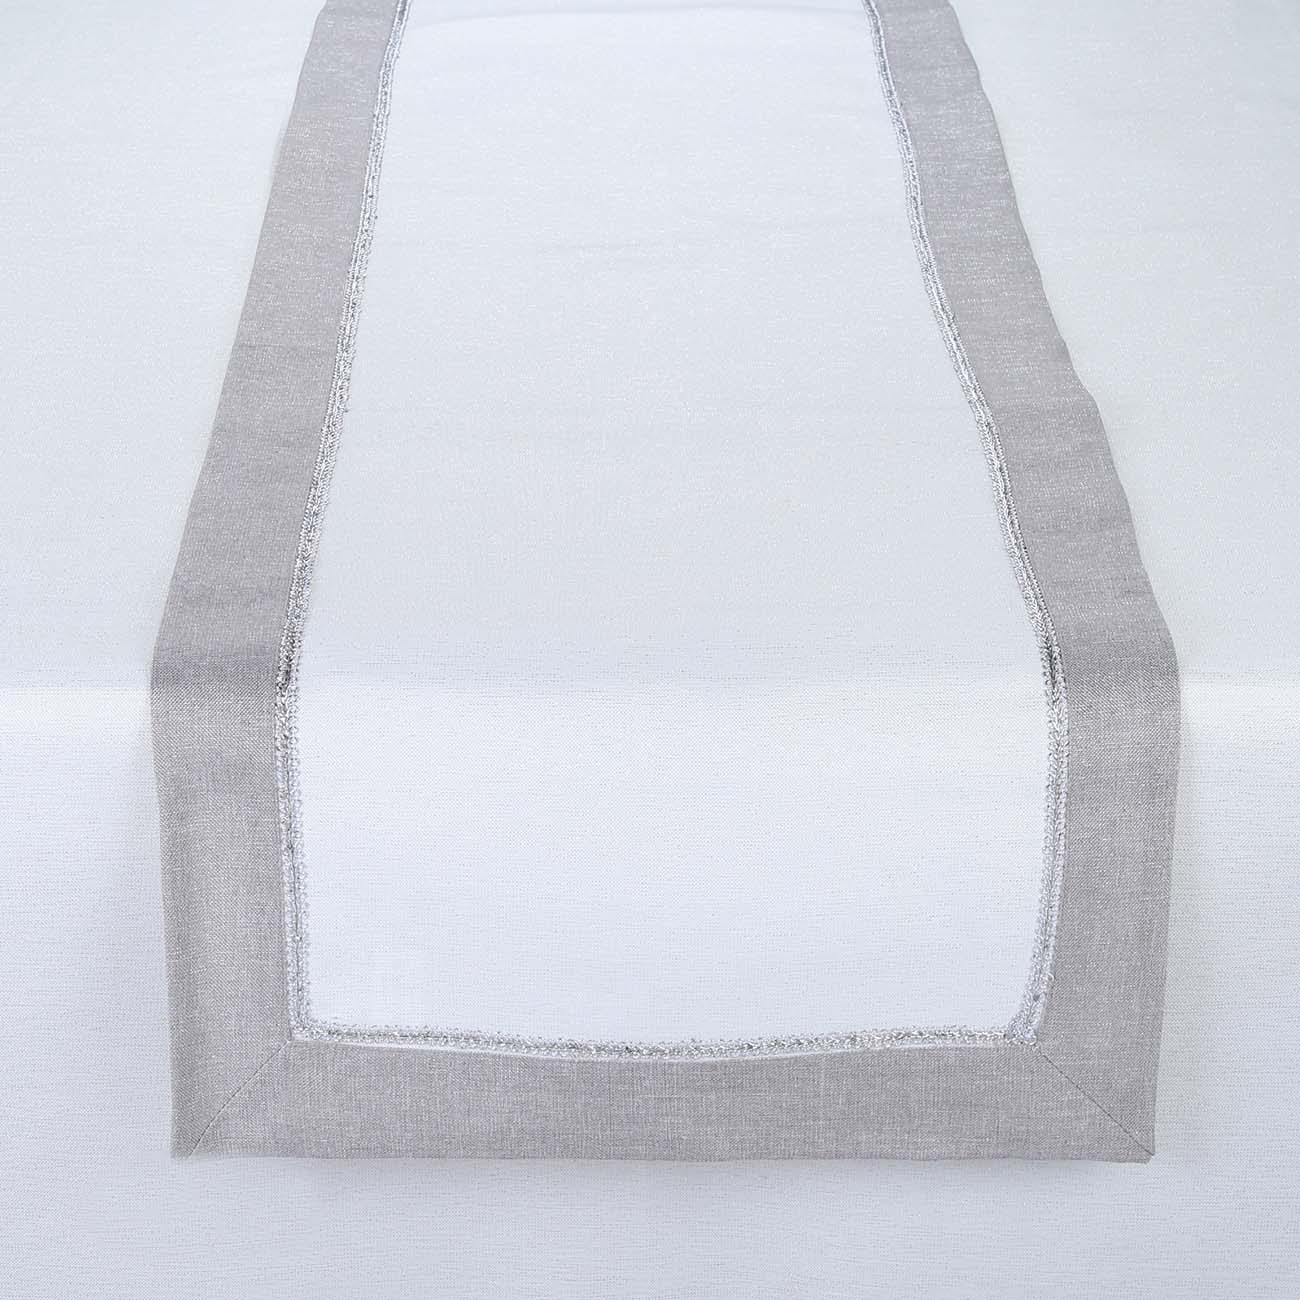 Дорожка настольная, 40х160 см, полиэстер, бело-серая, Milky way изображение № 2